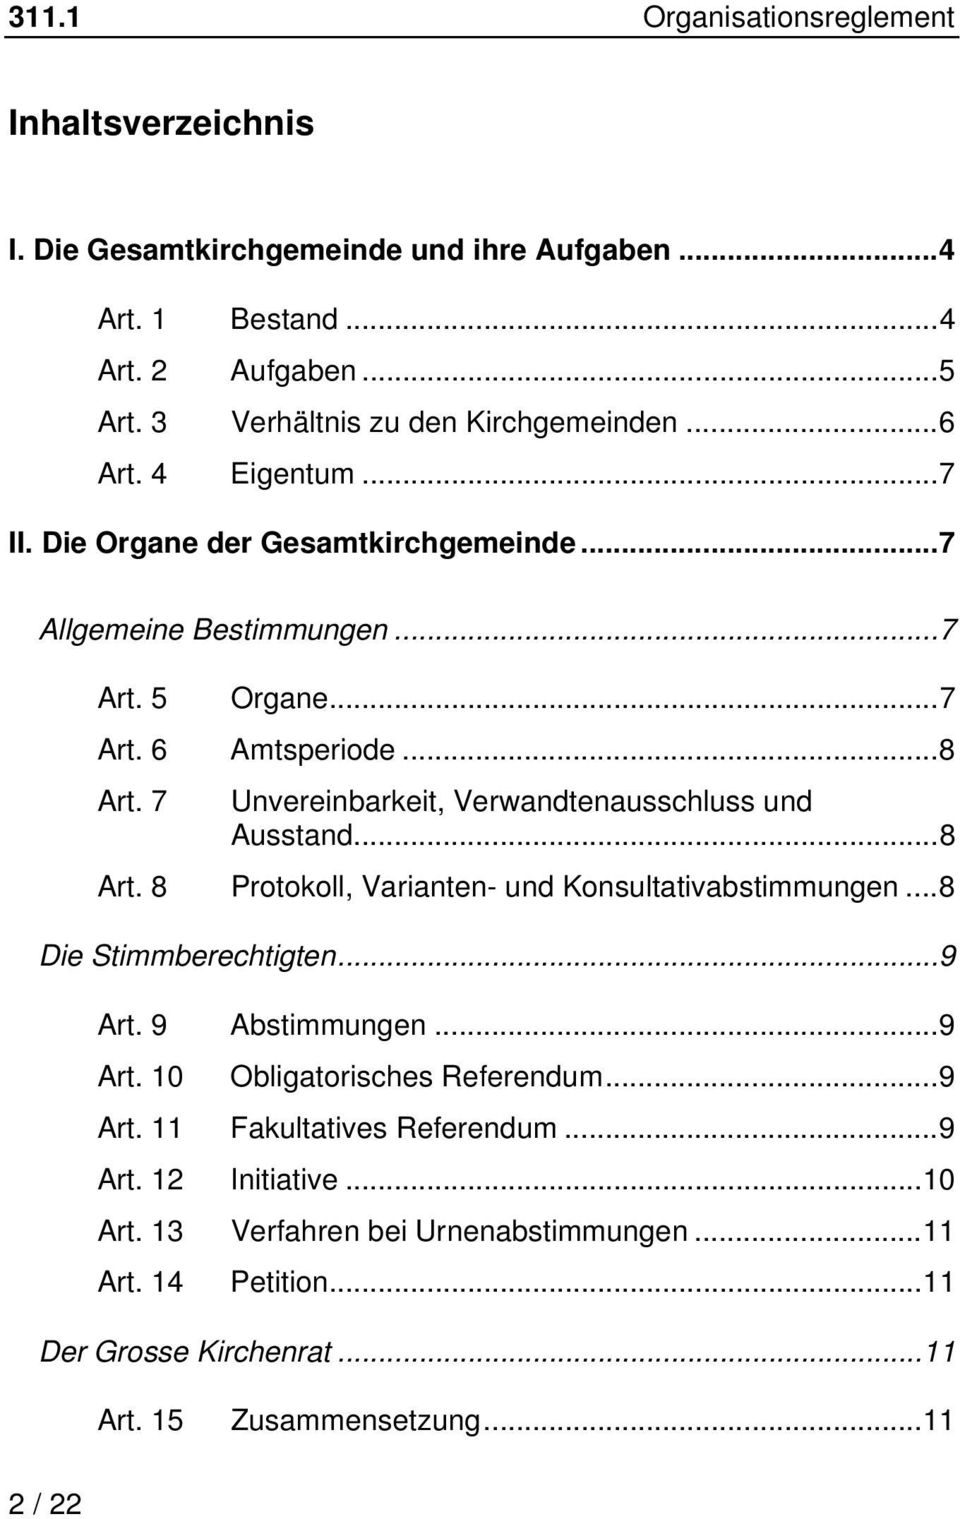 7 Unvereinbarkeit, Verwandtenausschluss und Ausstand...8 Art. 8 Protokoll, Varianten- und Konsultativabstimmungen...8 Die Stimmberechtigten...9 Art. 9 Abstimmungen...9 Art. 10 Obligatorisches Referendum.